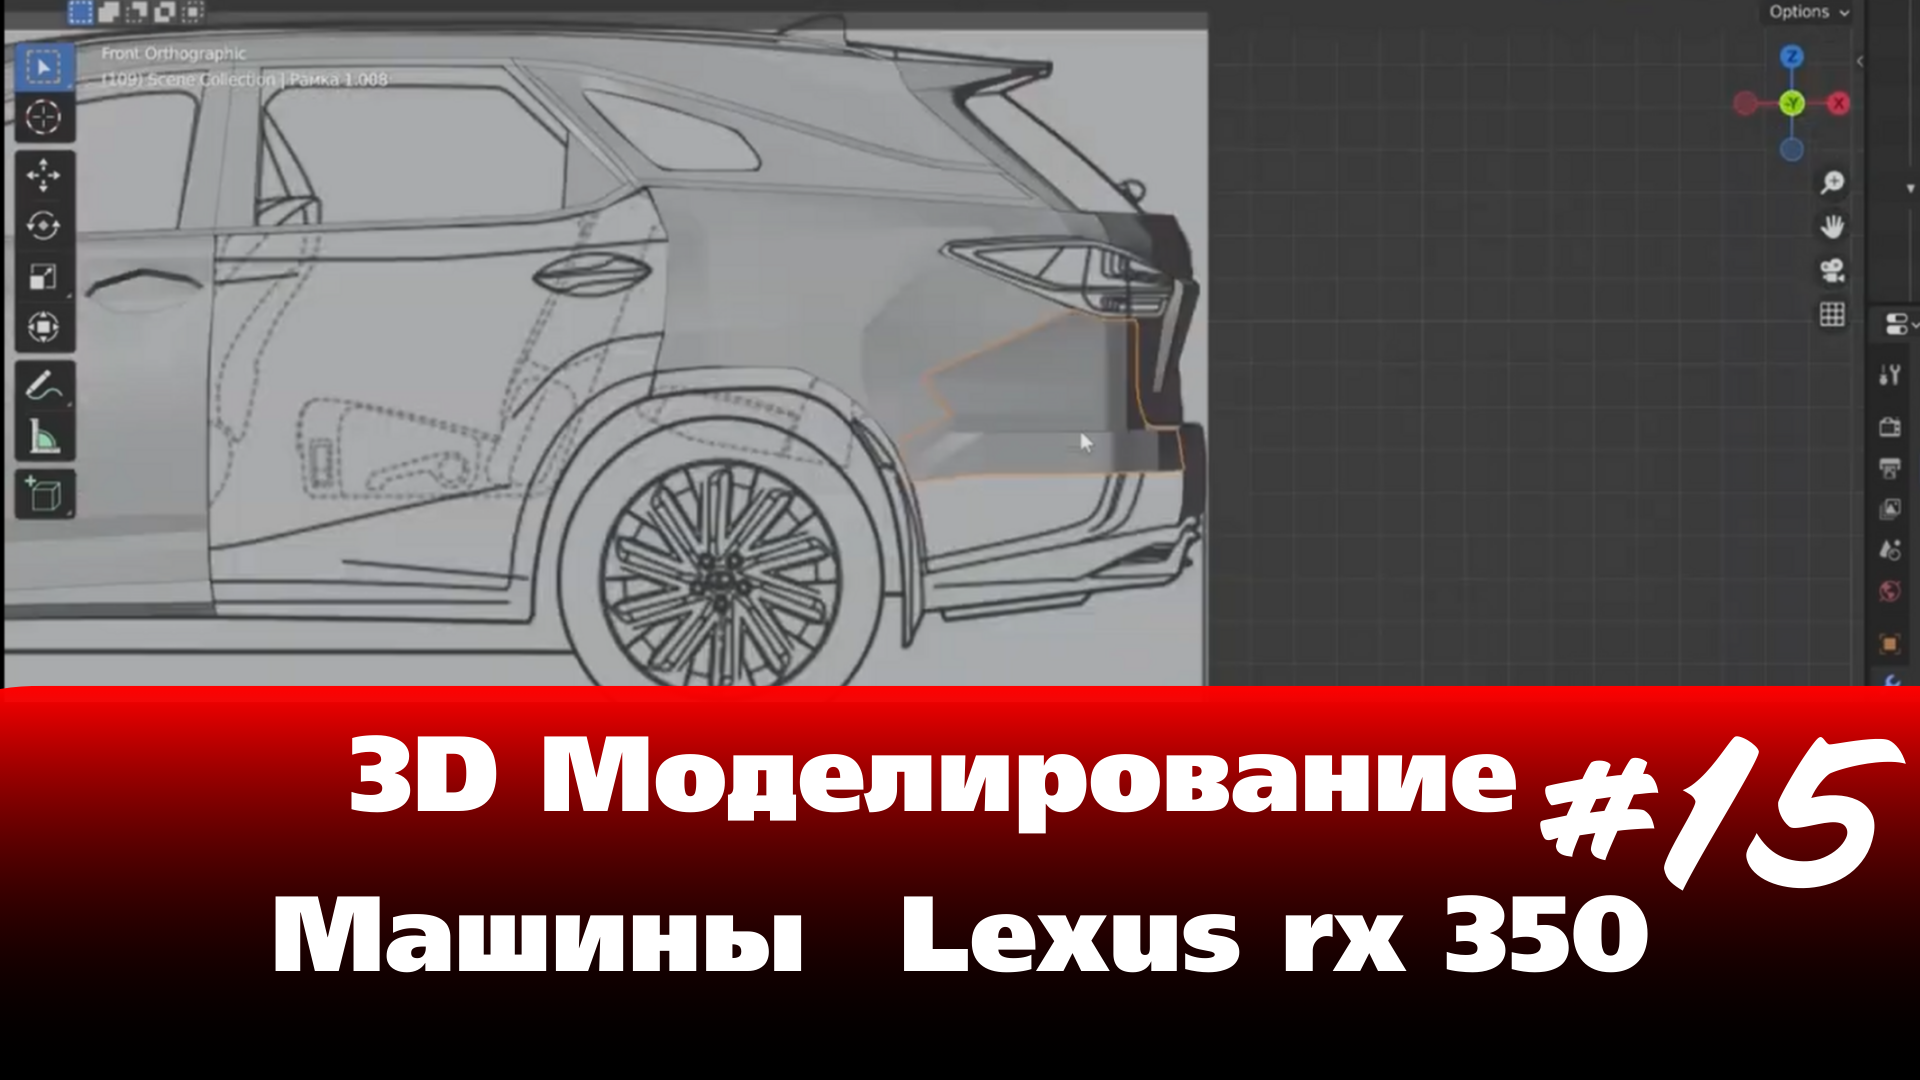 3D Моделирование Машины в Blender - Lexus rx 350 часть 15 #Blender